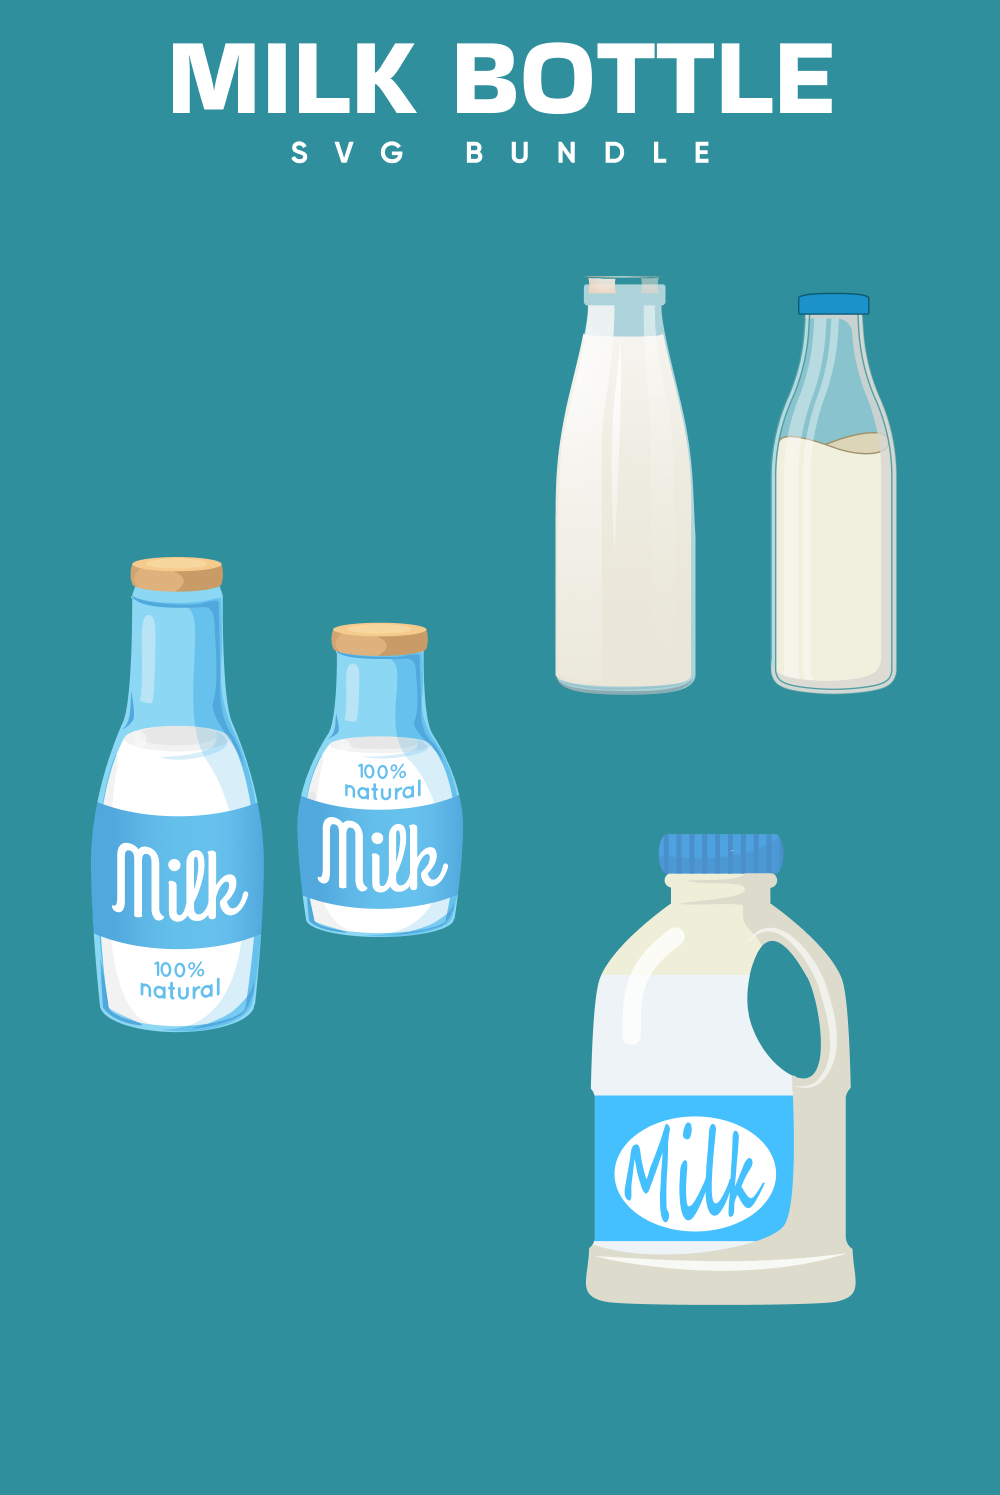 Milk bottle svg bundle of pinterest.